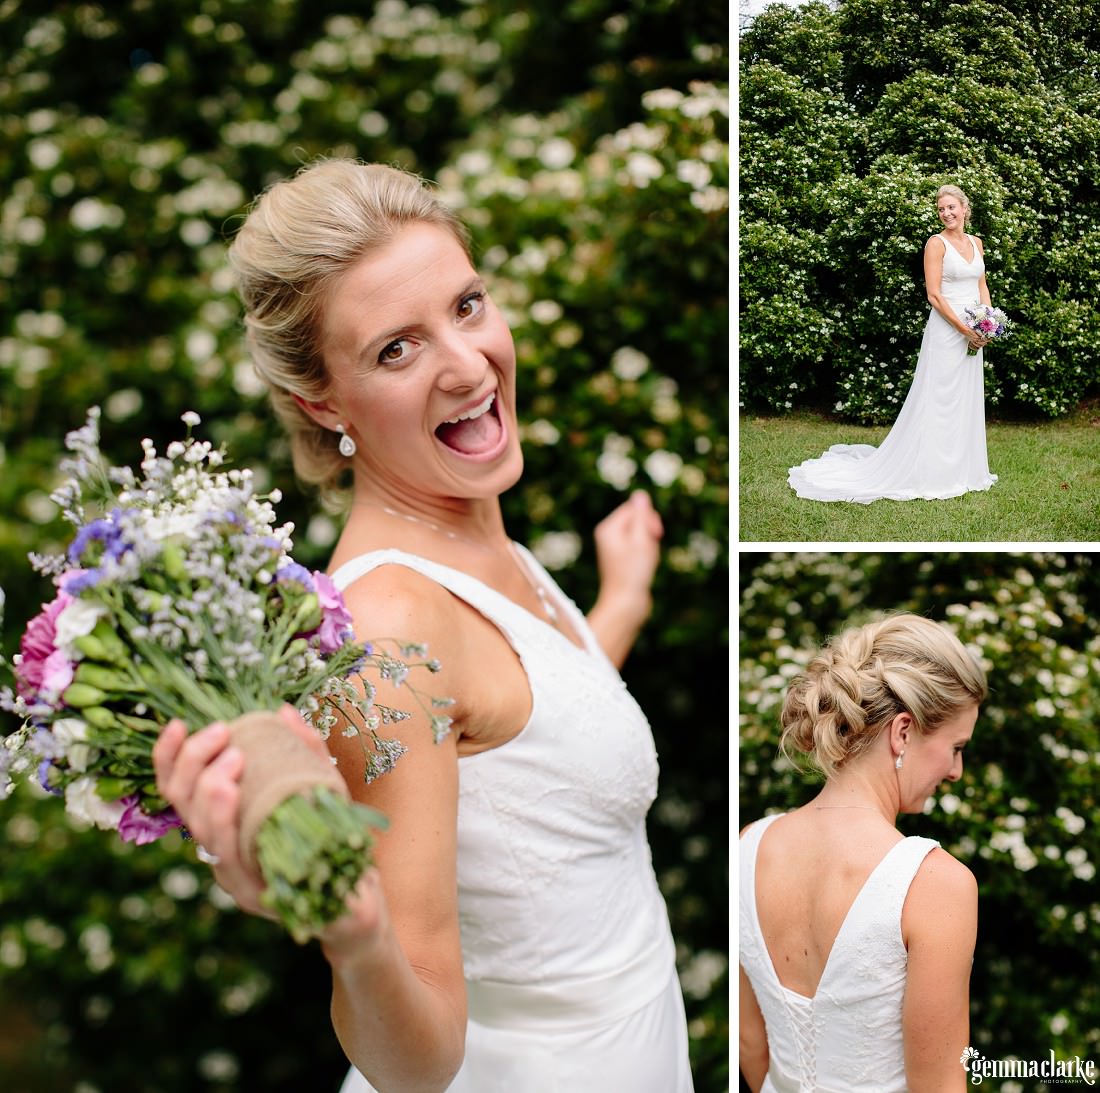 A bride posing in a garden with her bouquet - Book Barn Wedding